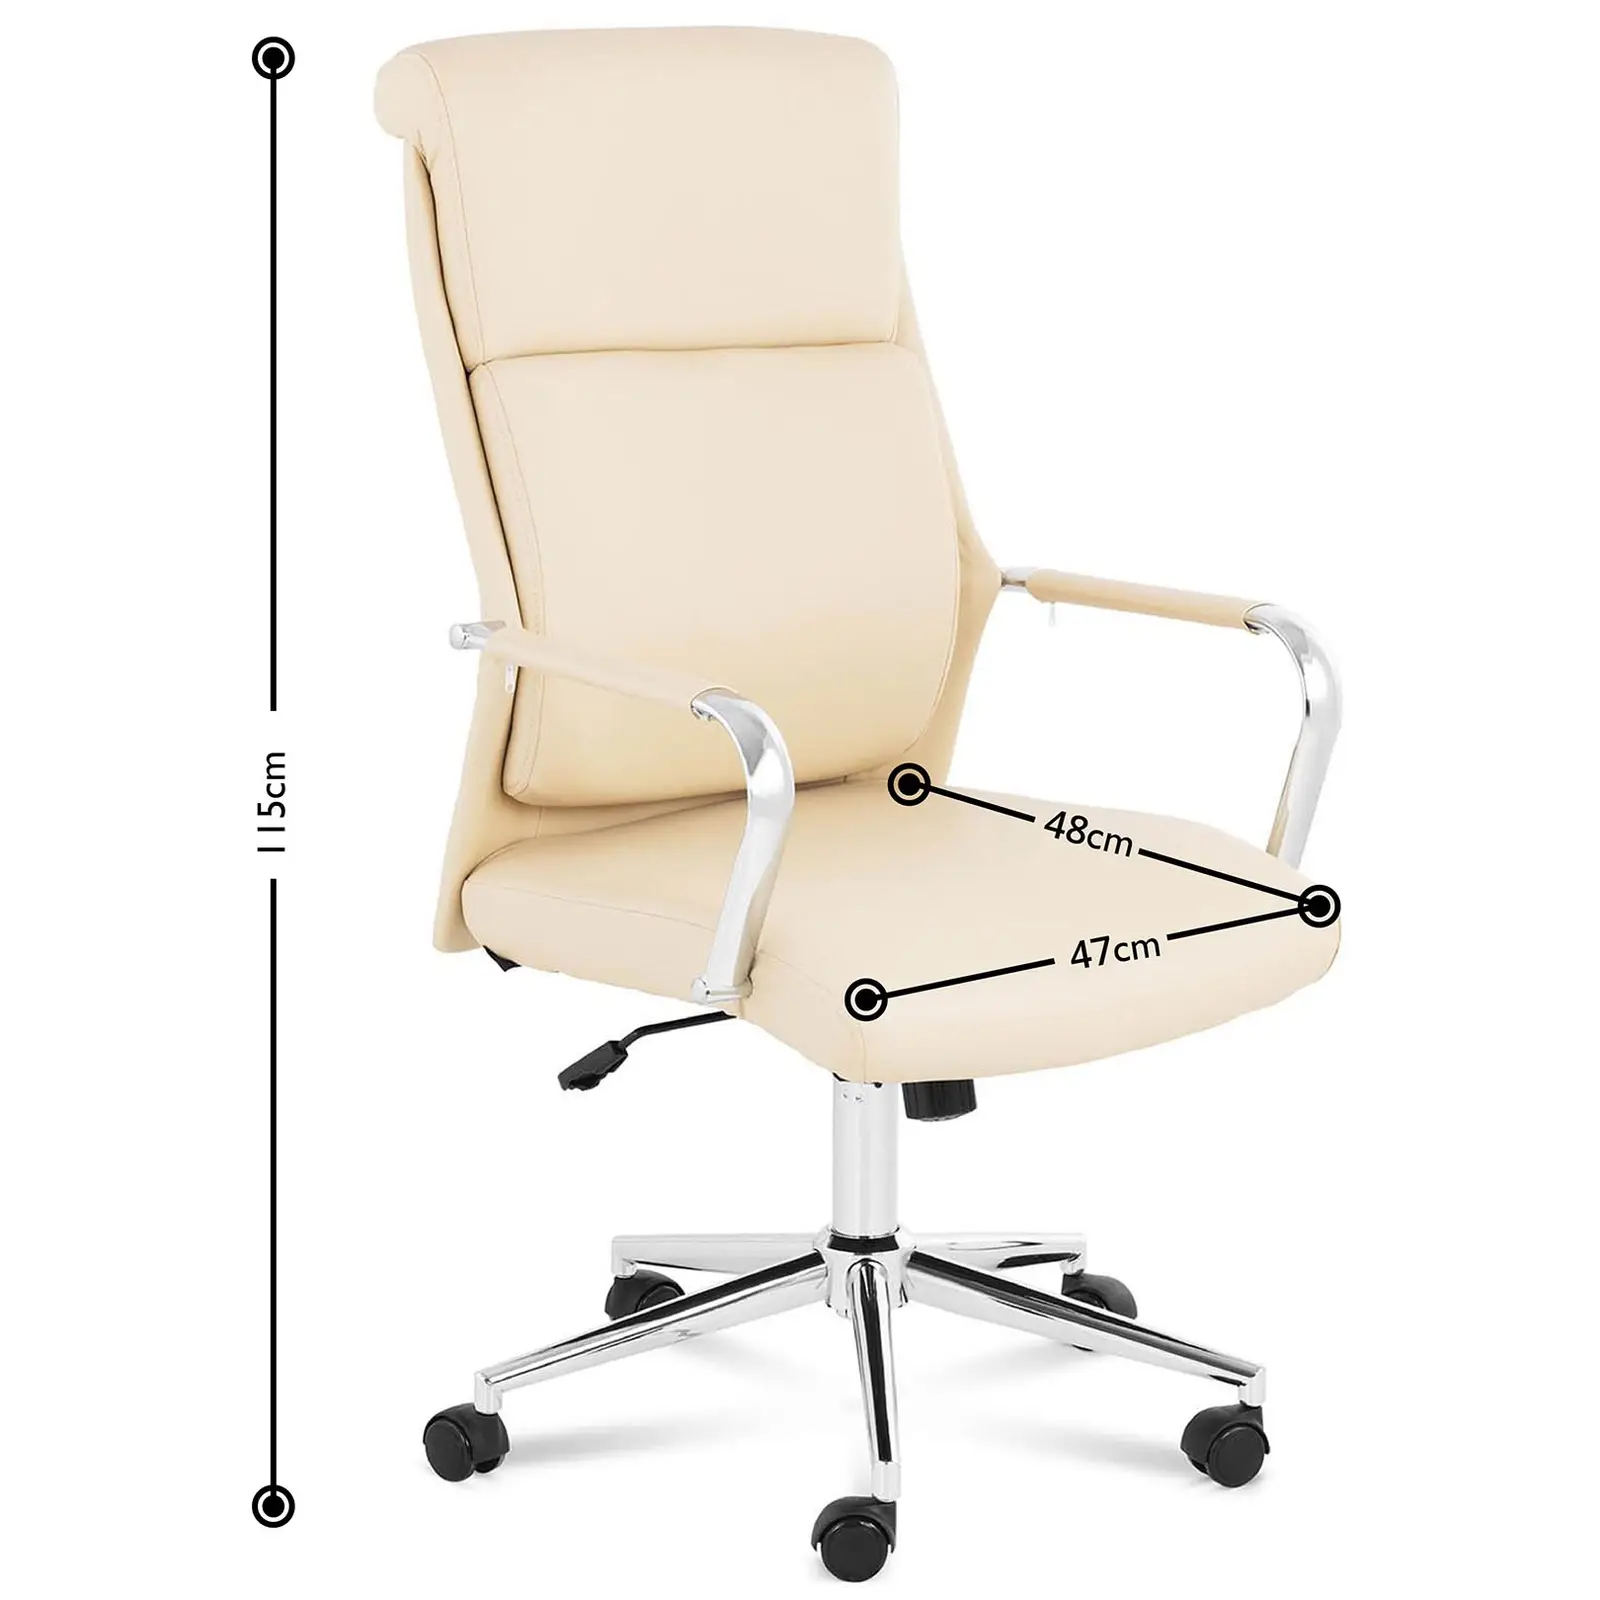 Office Chair - 180 kg - tan